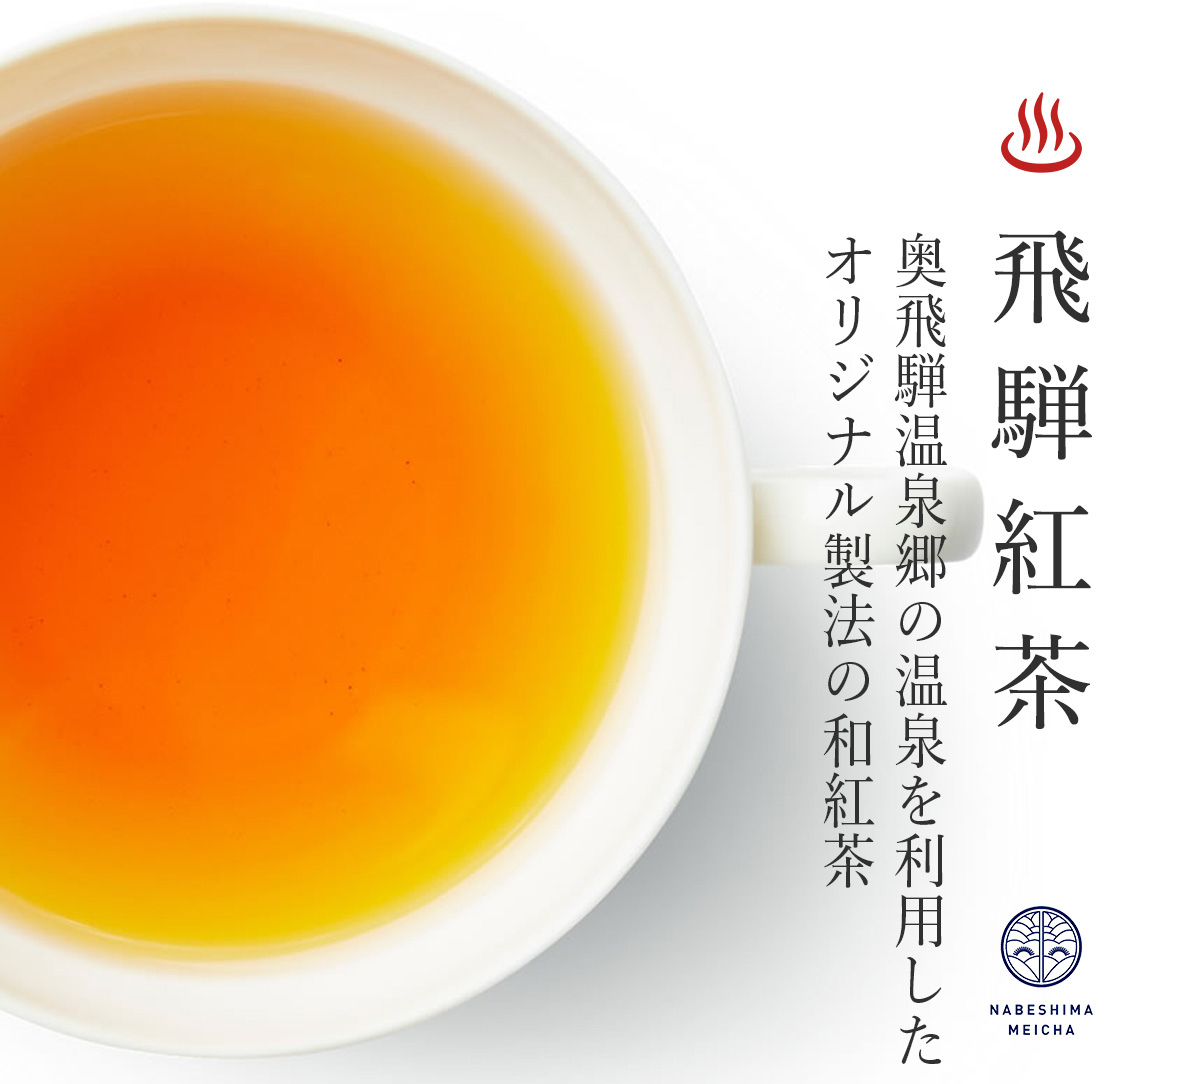 奥飛騨温泉郷の温泉を利用したオリジナル紅茶